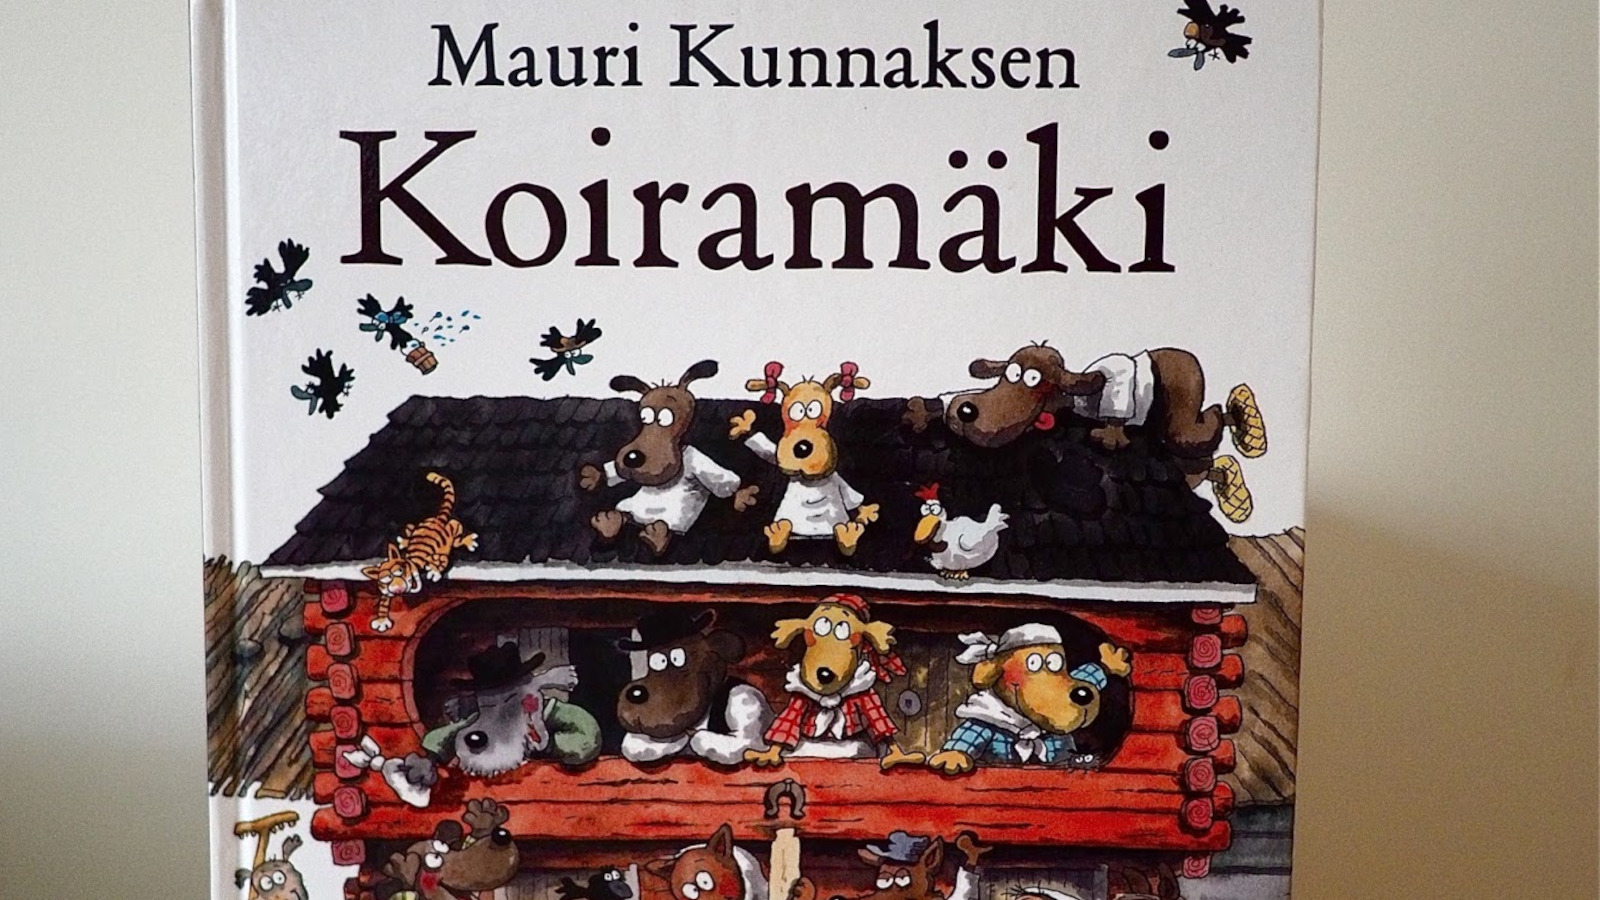 Mauri Kunnaksen Koiramäki-lastenkirjat ovat Mitä Suomi lukee -listan lasten- ja nuortenkirjojen kärkisijoilla.